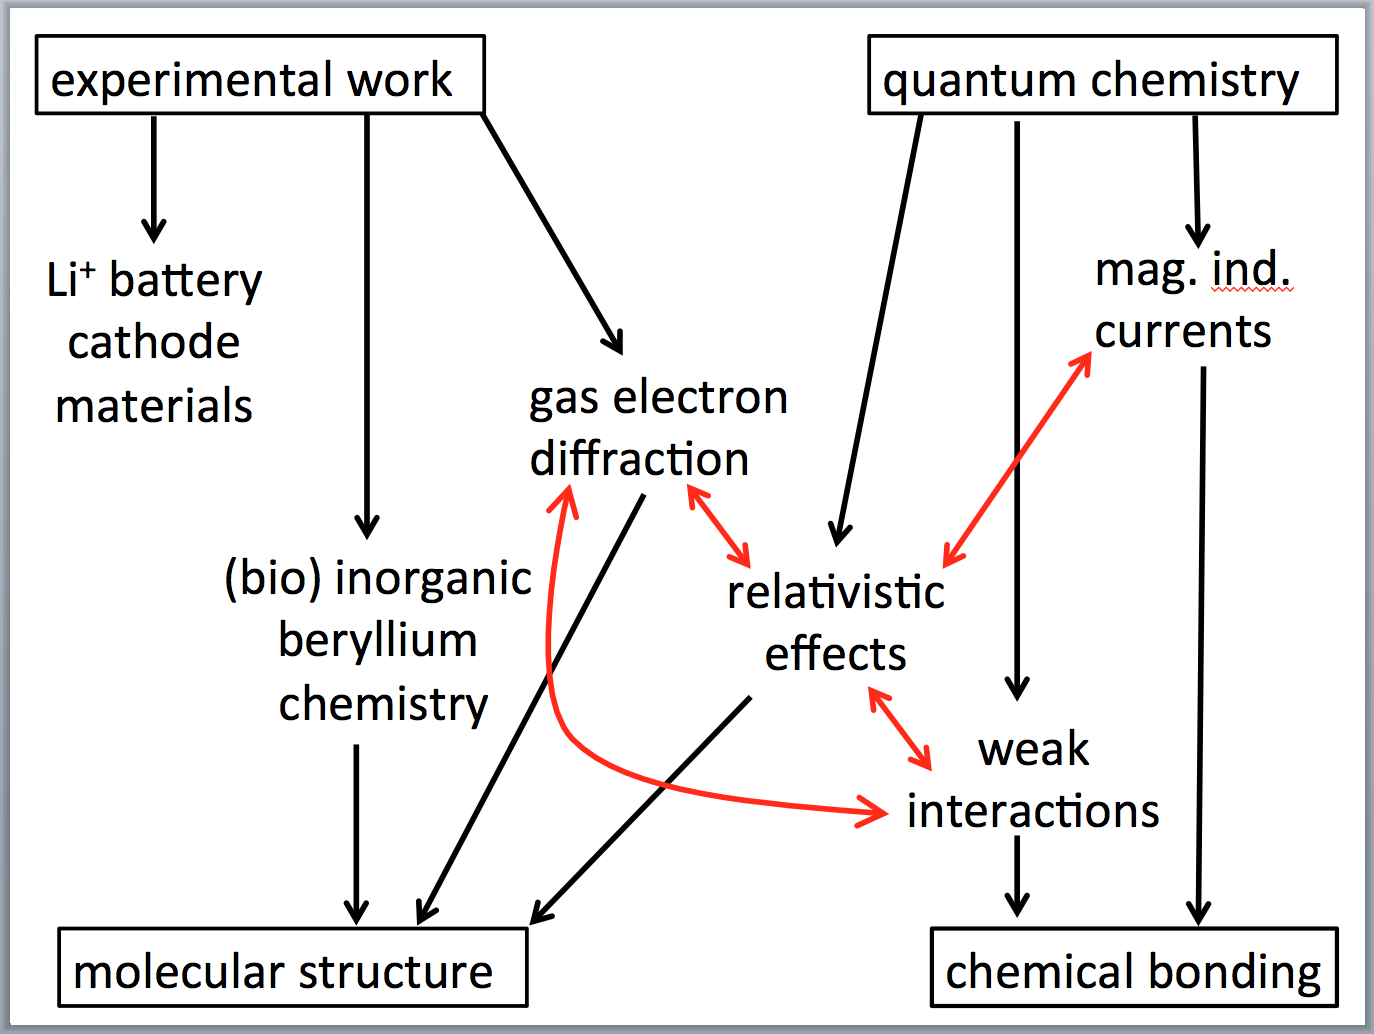 Diagram of scientific interests